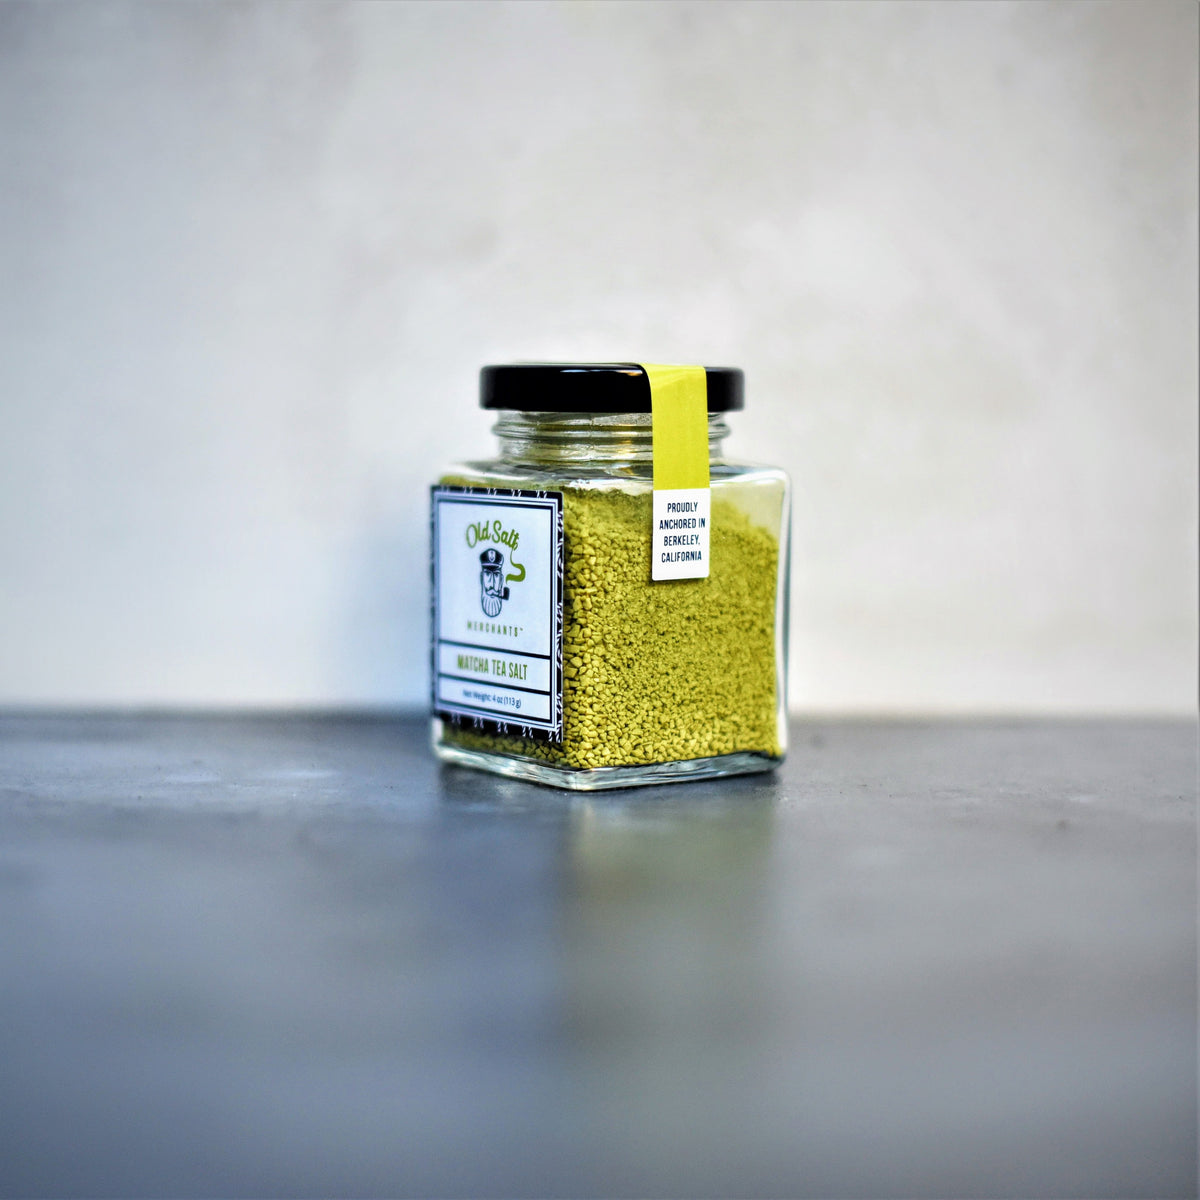 Matcha Tea Salt exclusive at Tastermonial